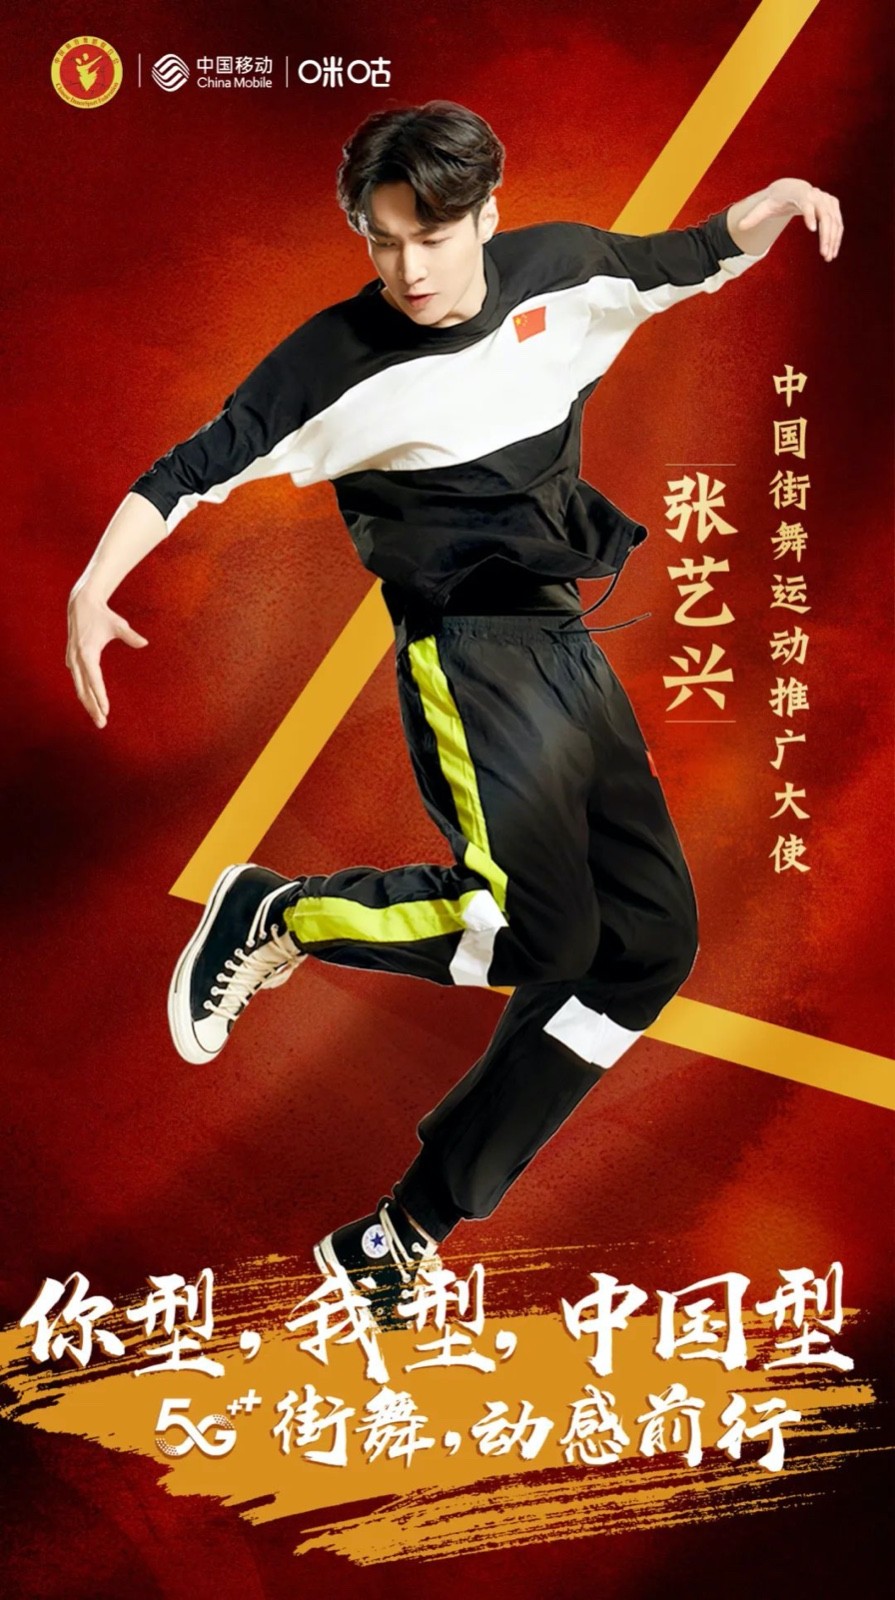 张艺兴成为中国街舞运动推广大使 将推广普及中国街舞运动文化